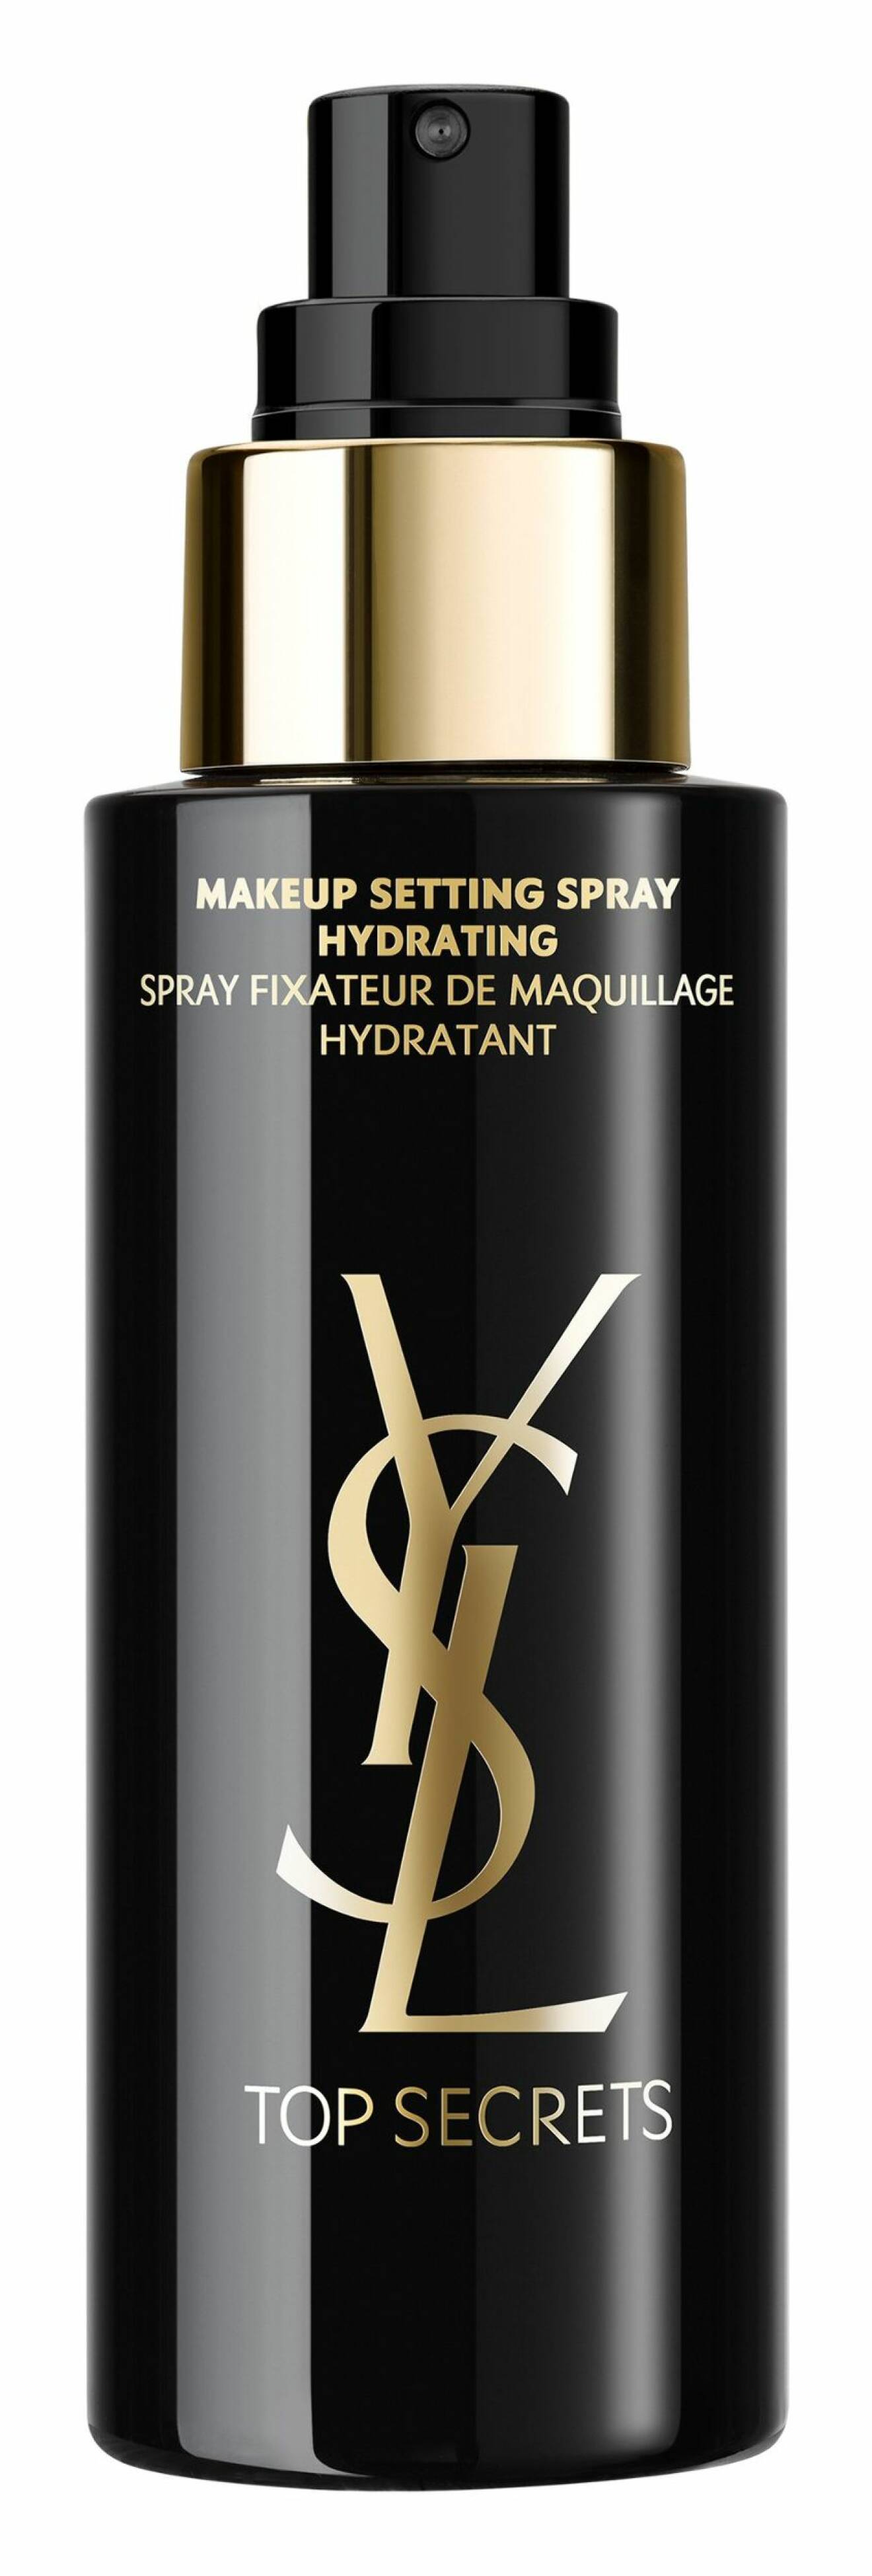 Top secrets make up setting spray, från YSL.